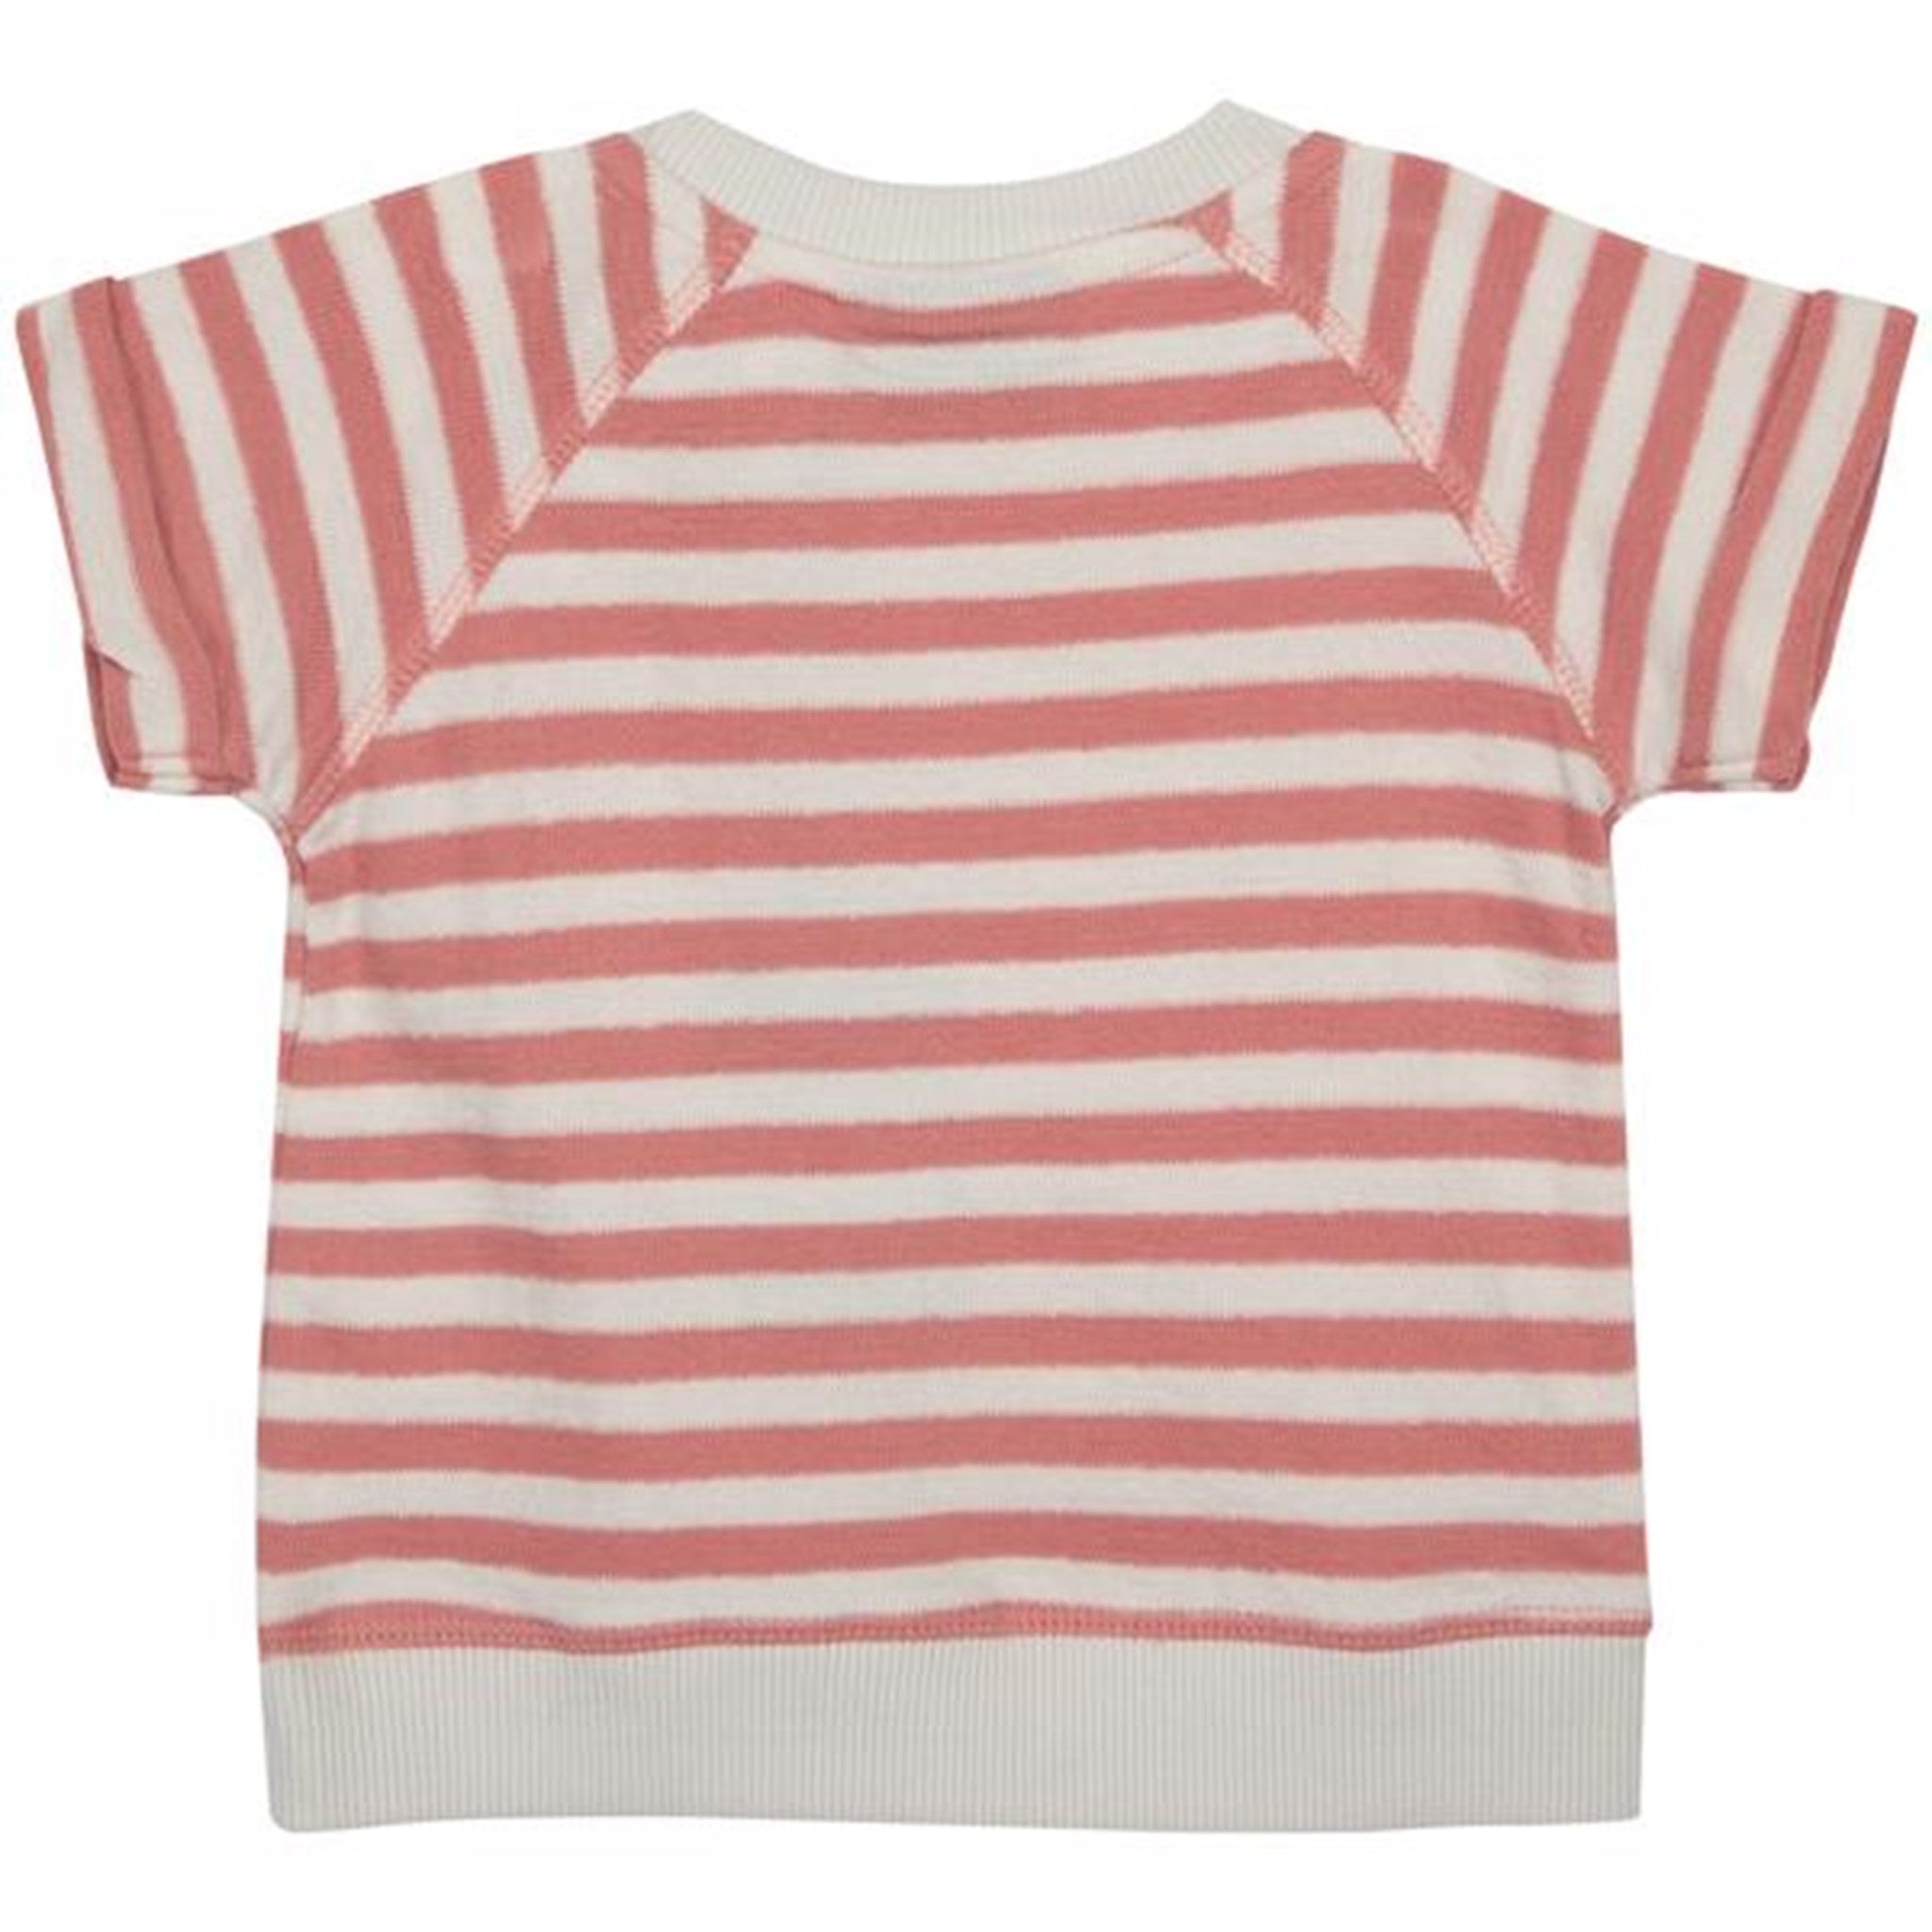 Sofie Schnoor Pink Off White Stripe T-shirt 2